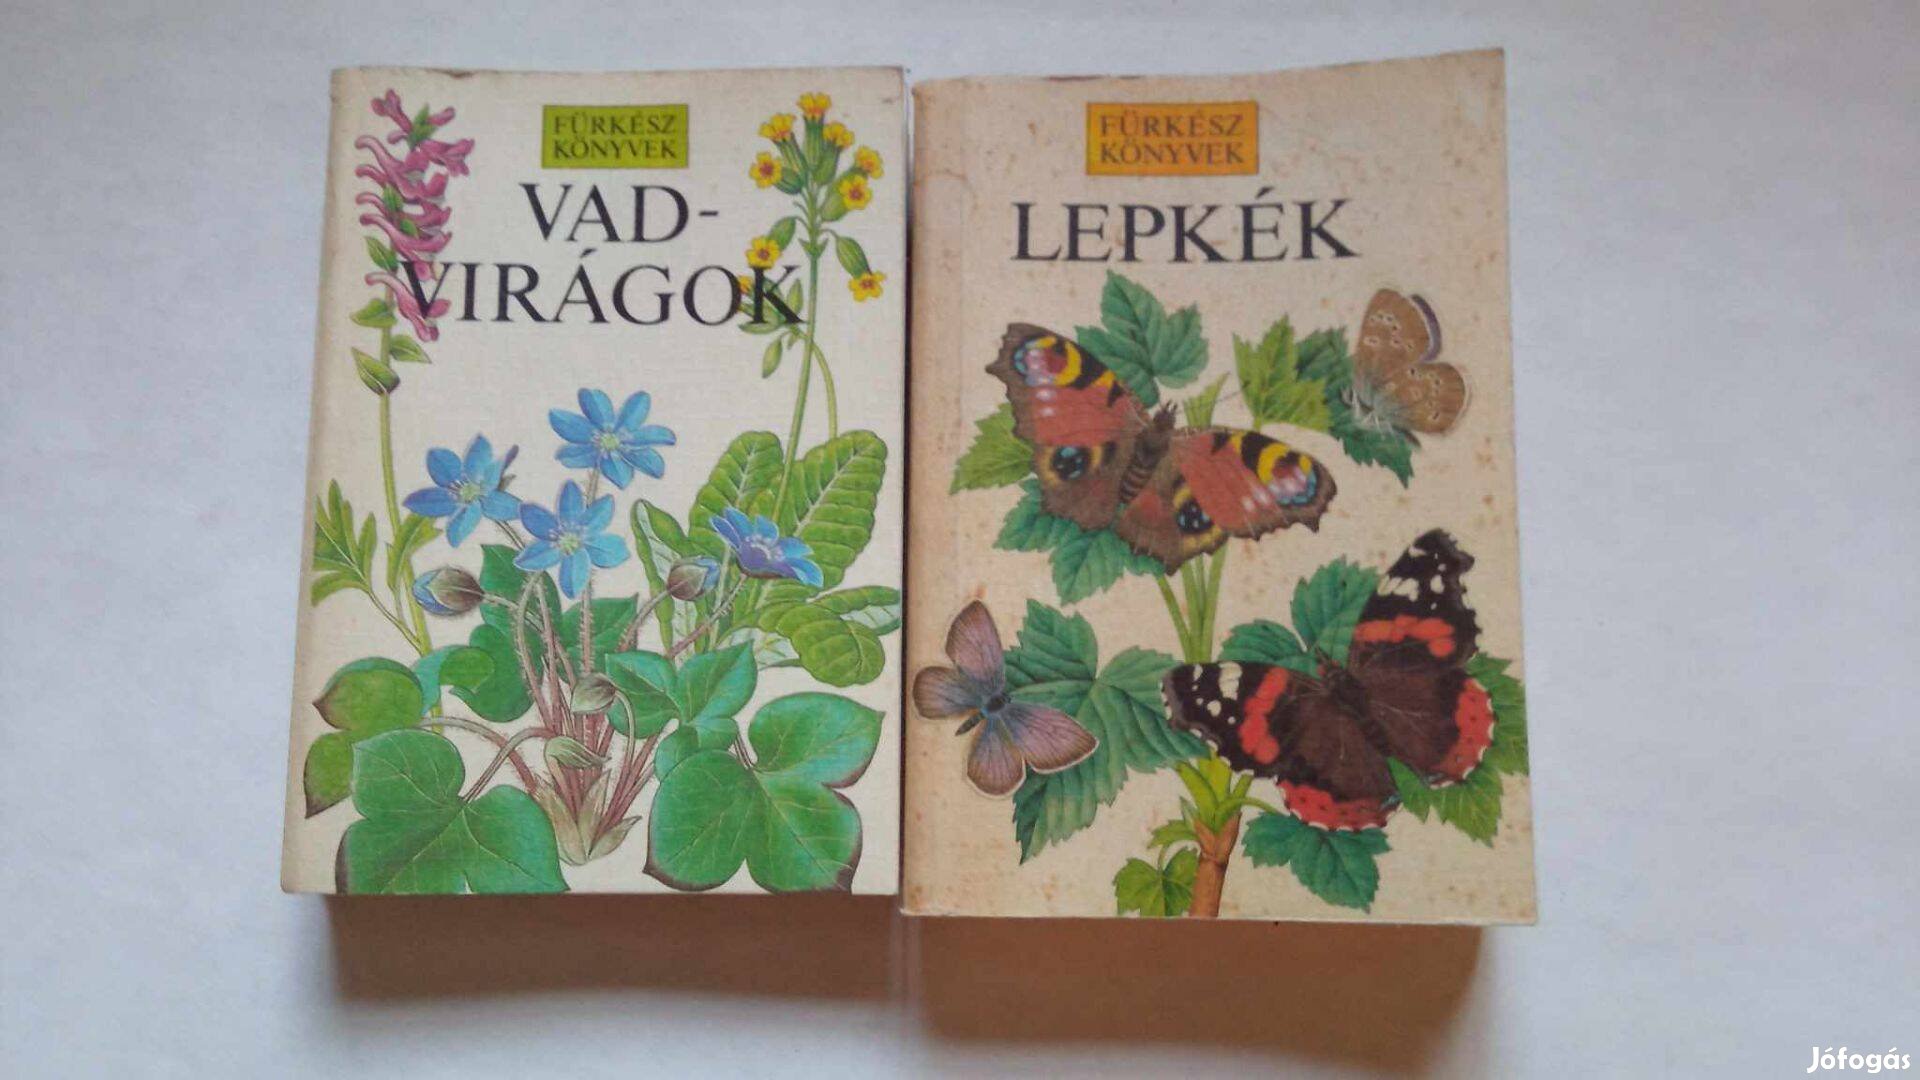 Vadvirágok és Lepkék Fűrkész könyvek 2 db 2000 Ft 1987.év